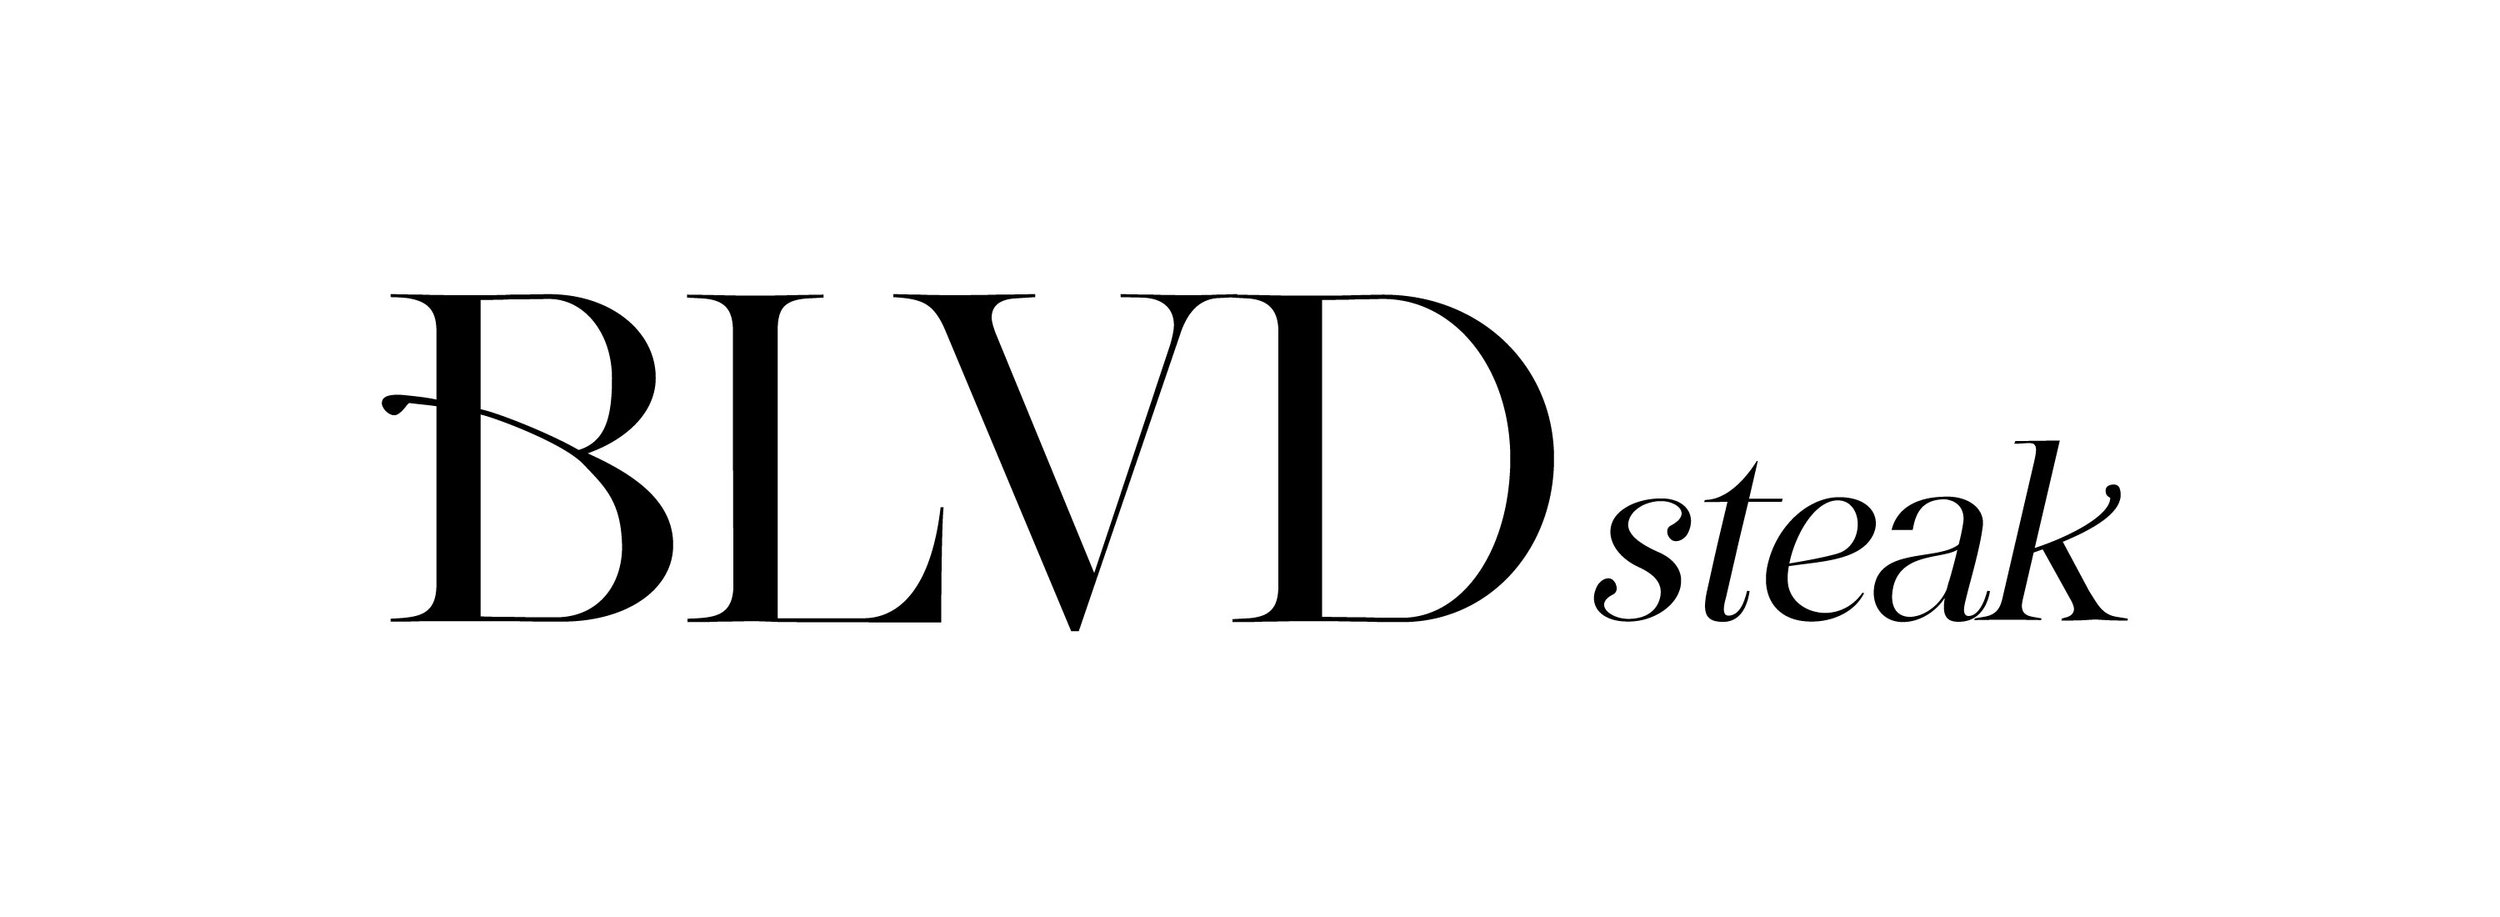 BLVD-Steak-Logo_SIDE-OUTLINES.jpg